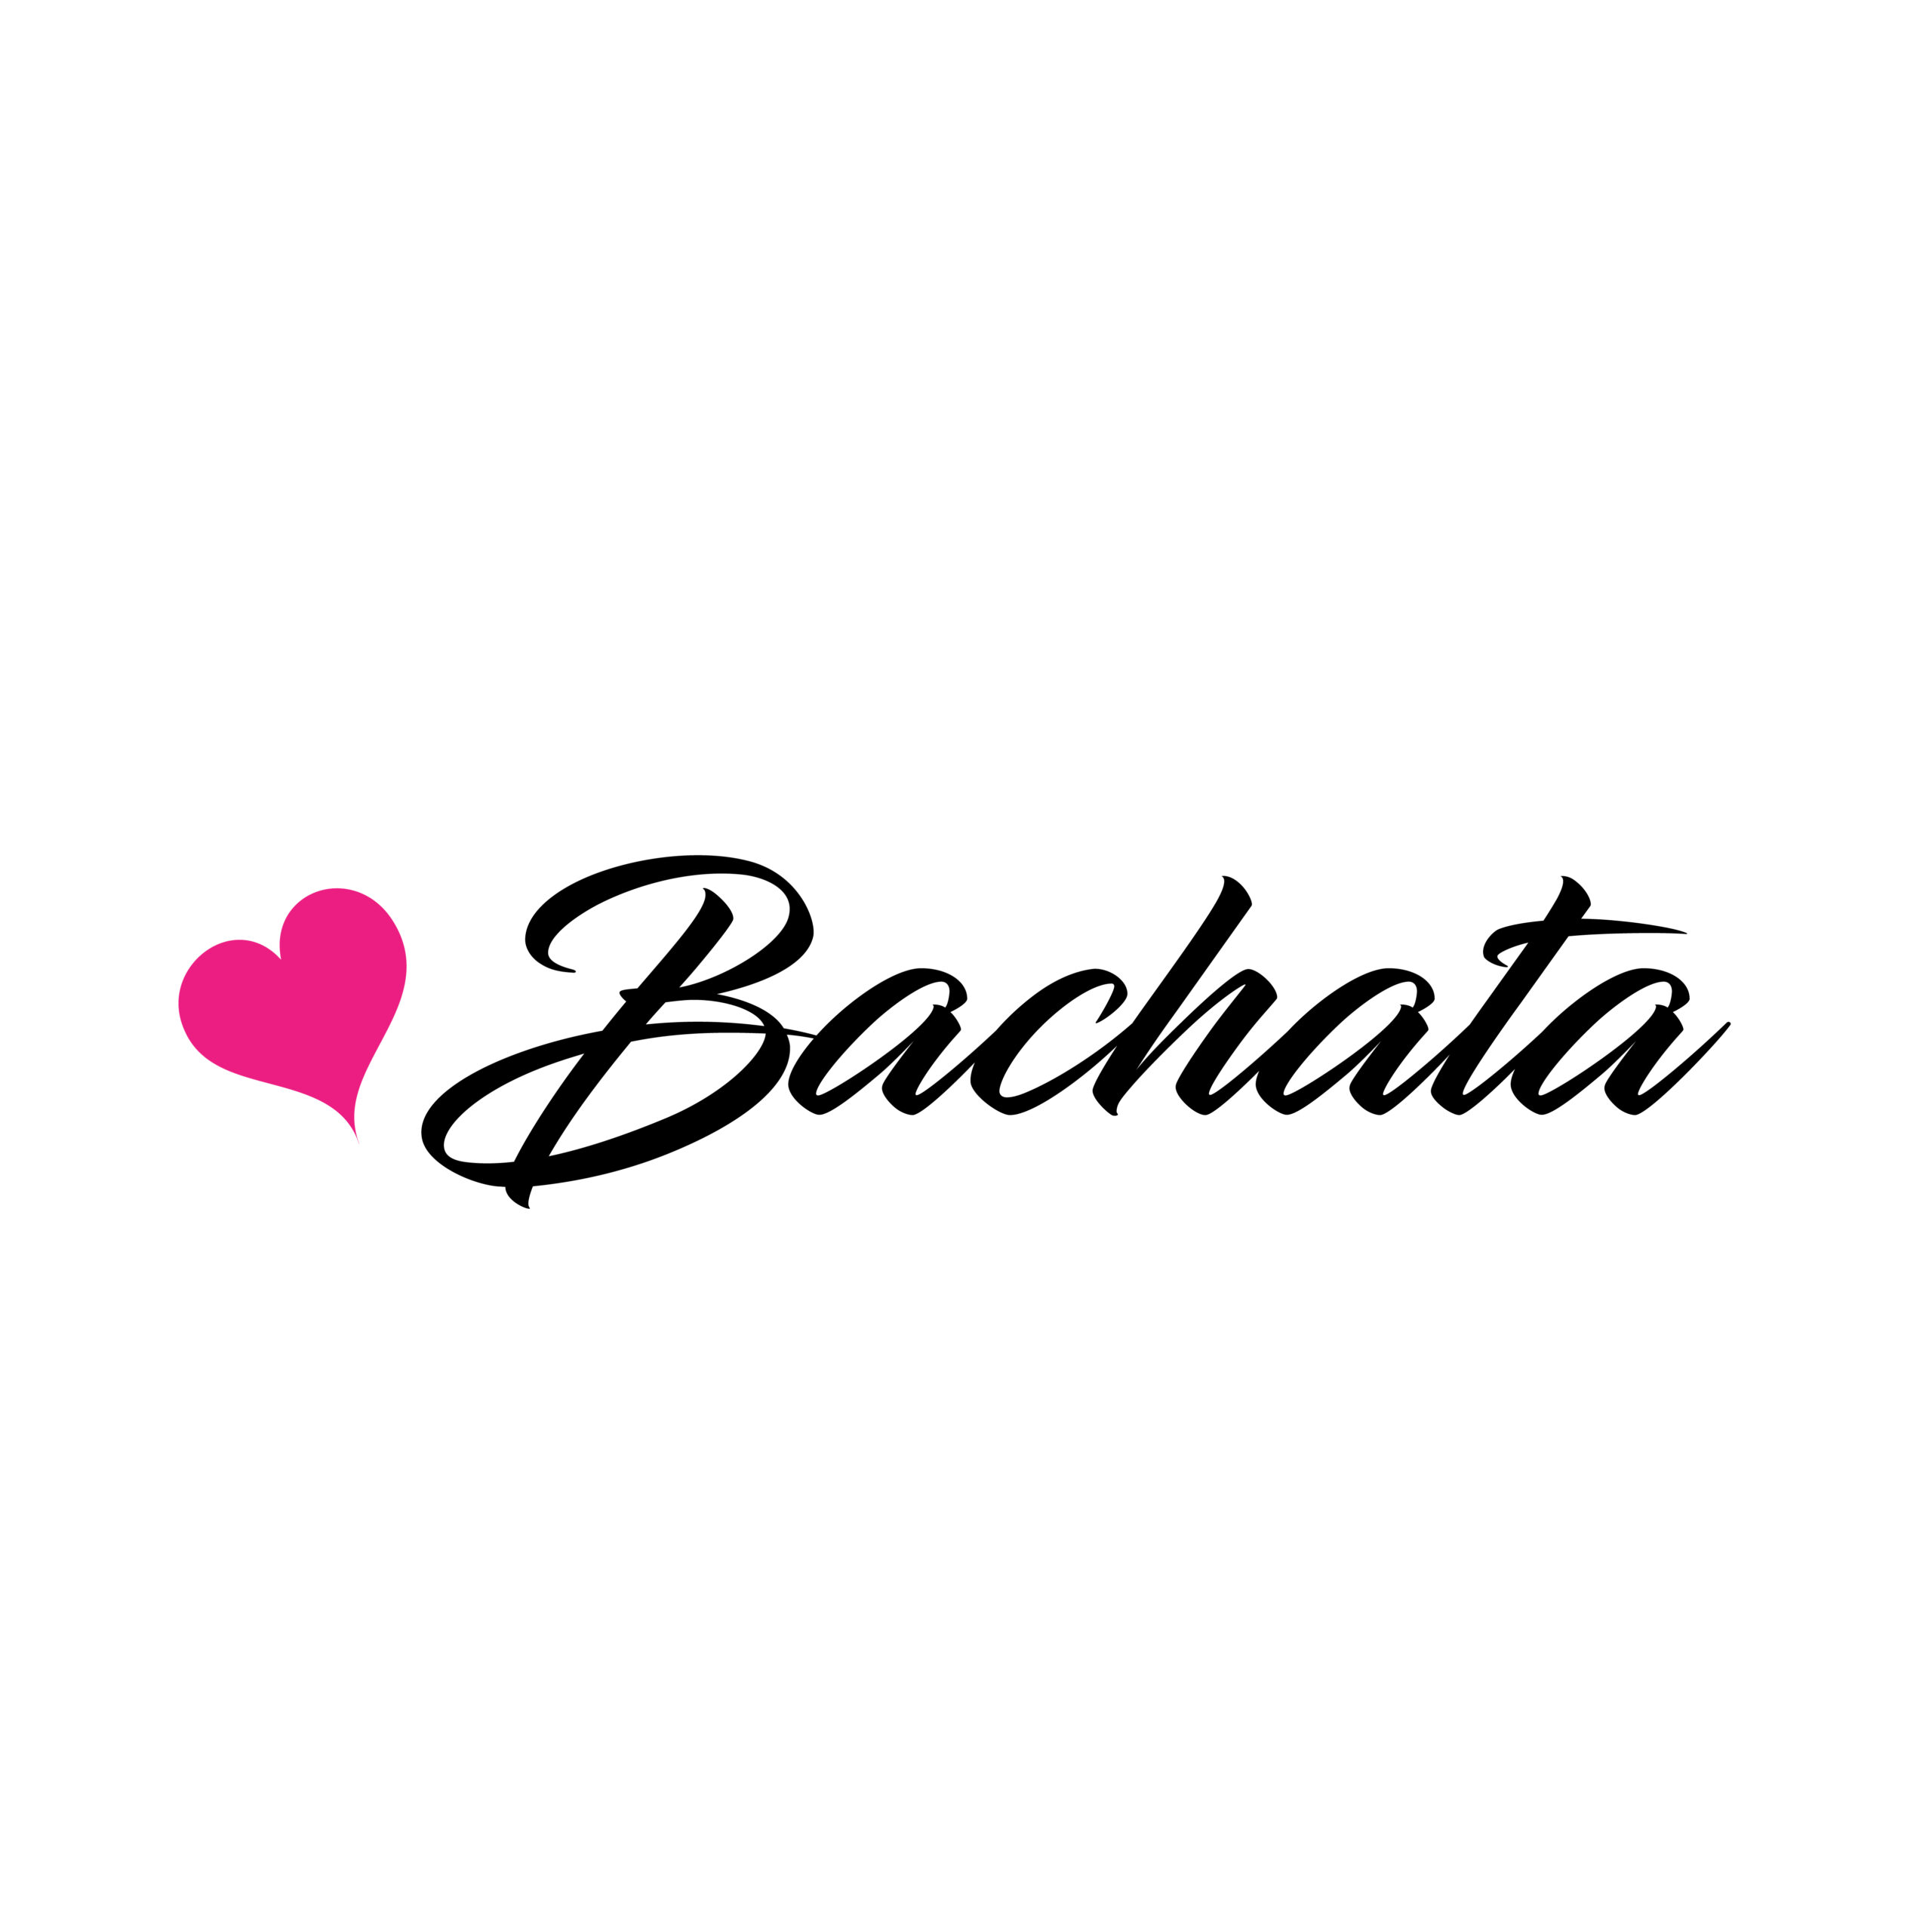 BAchata heart-01-01